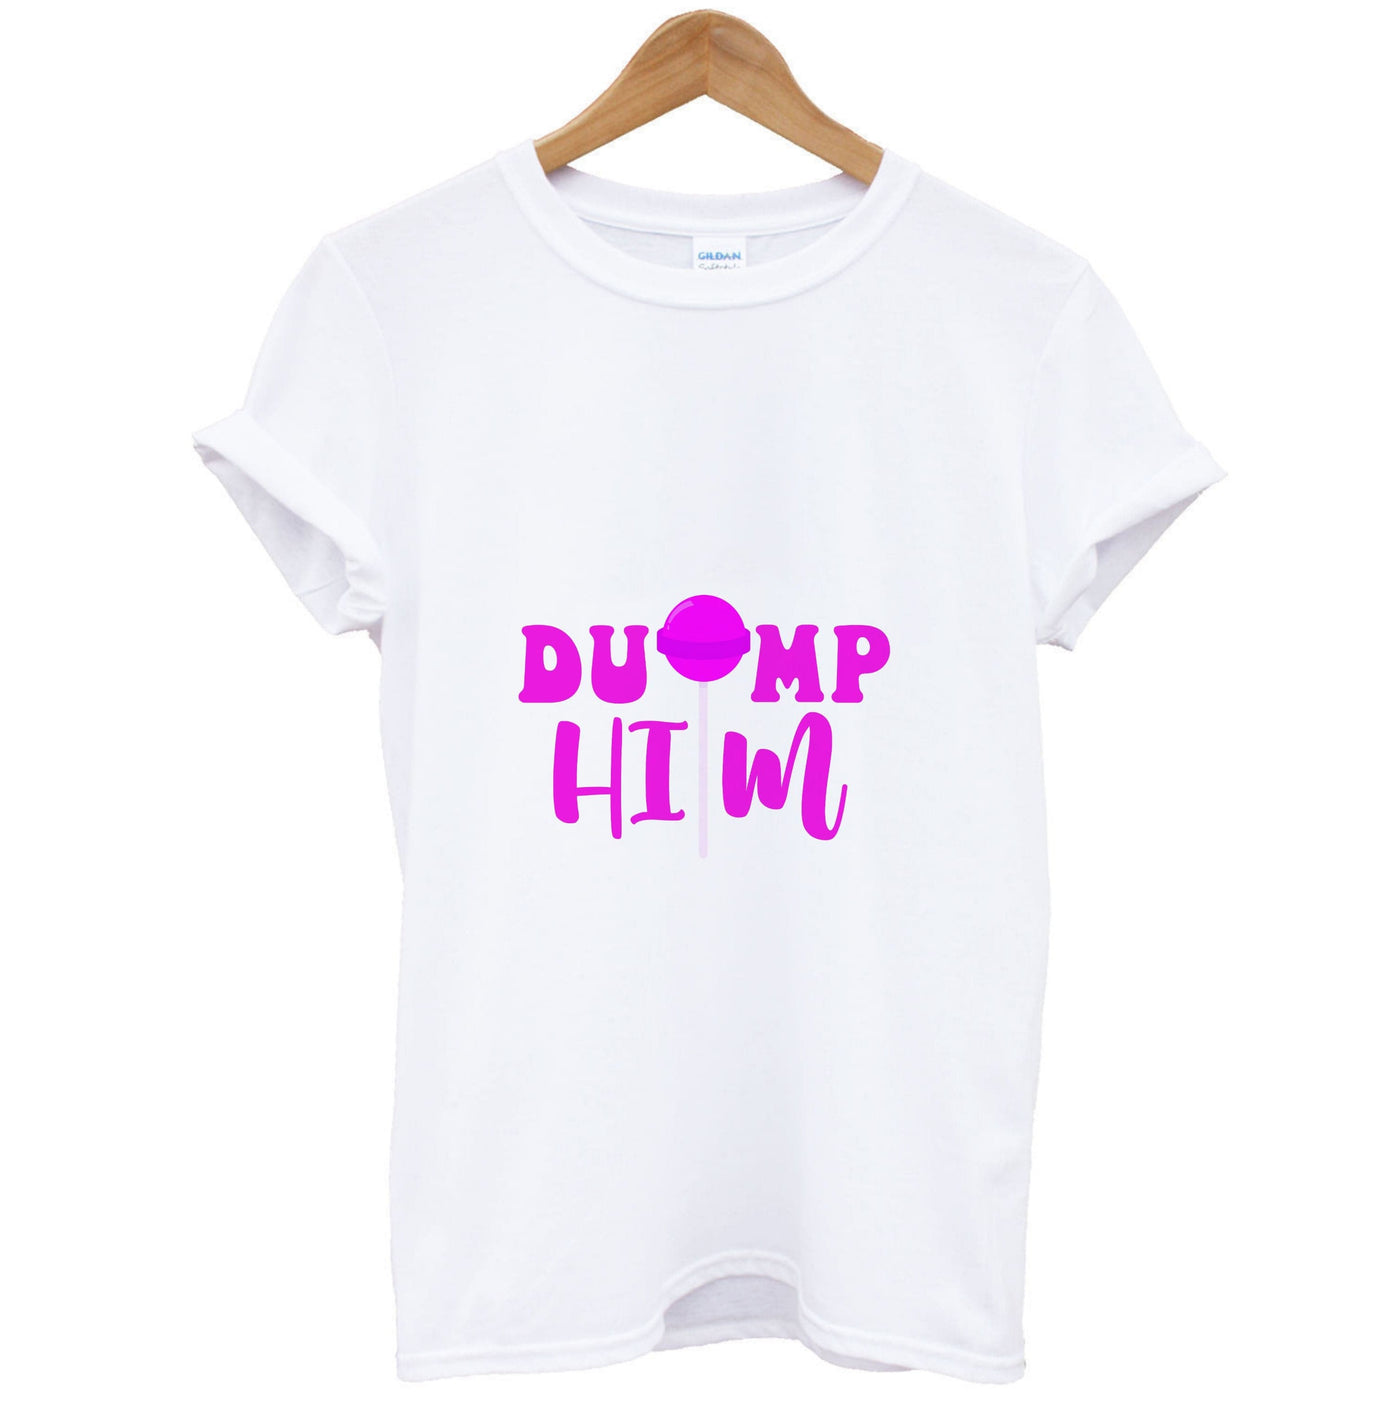 Dump Him - Summer T-Shirt